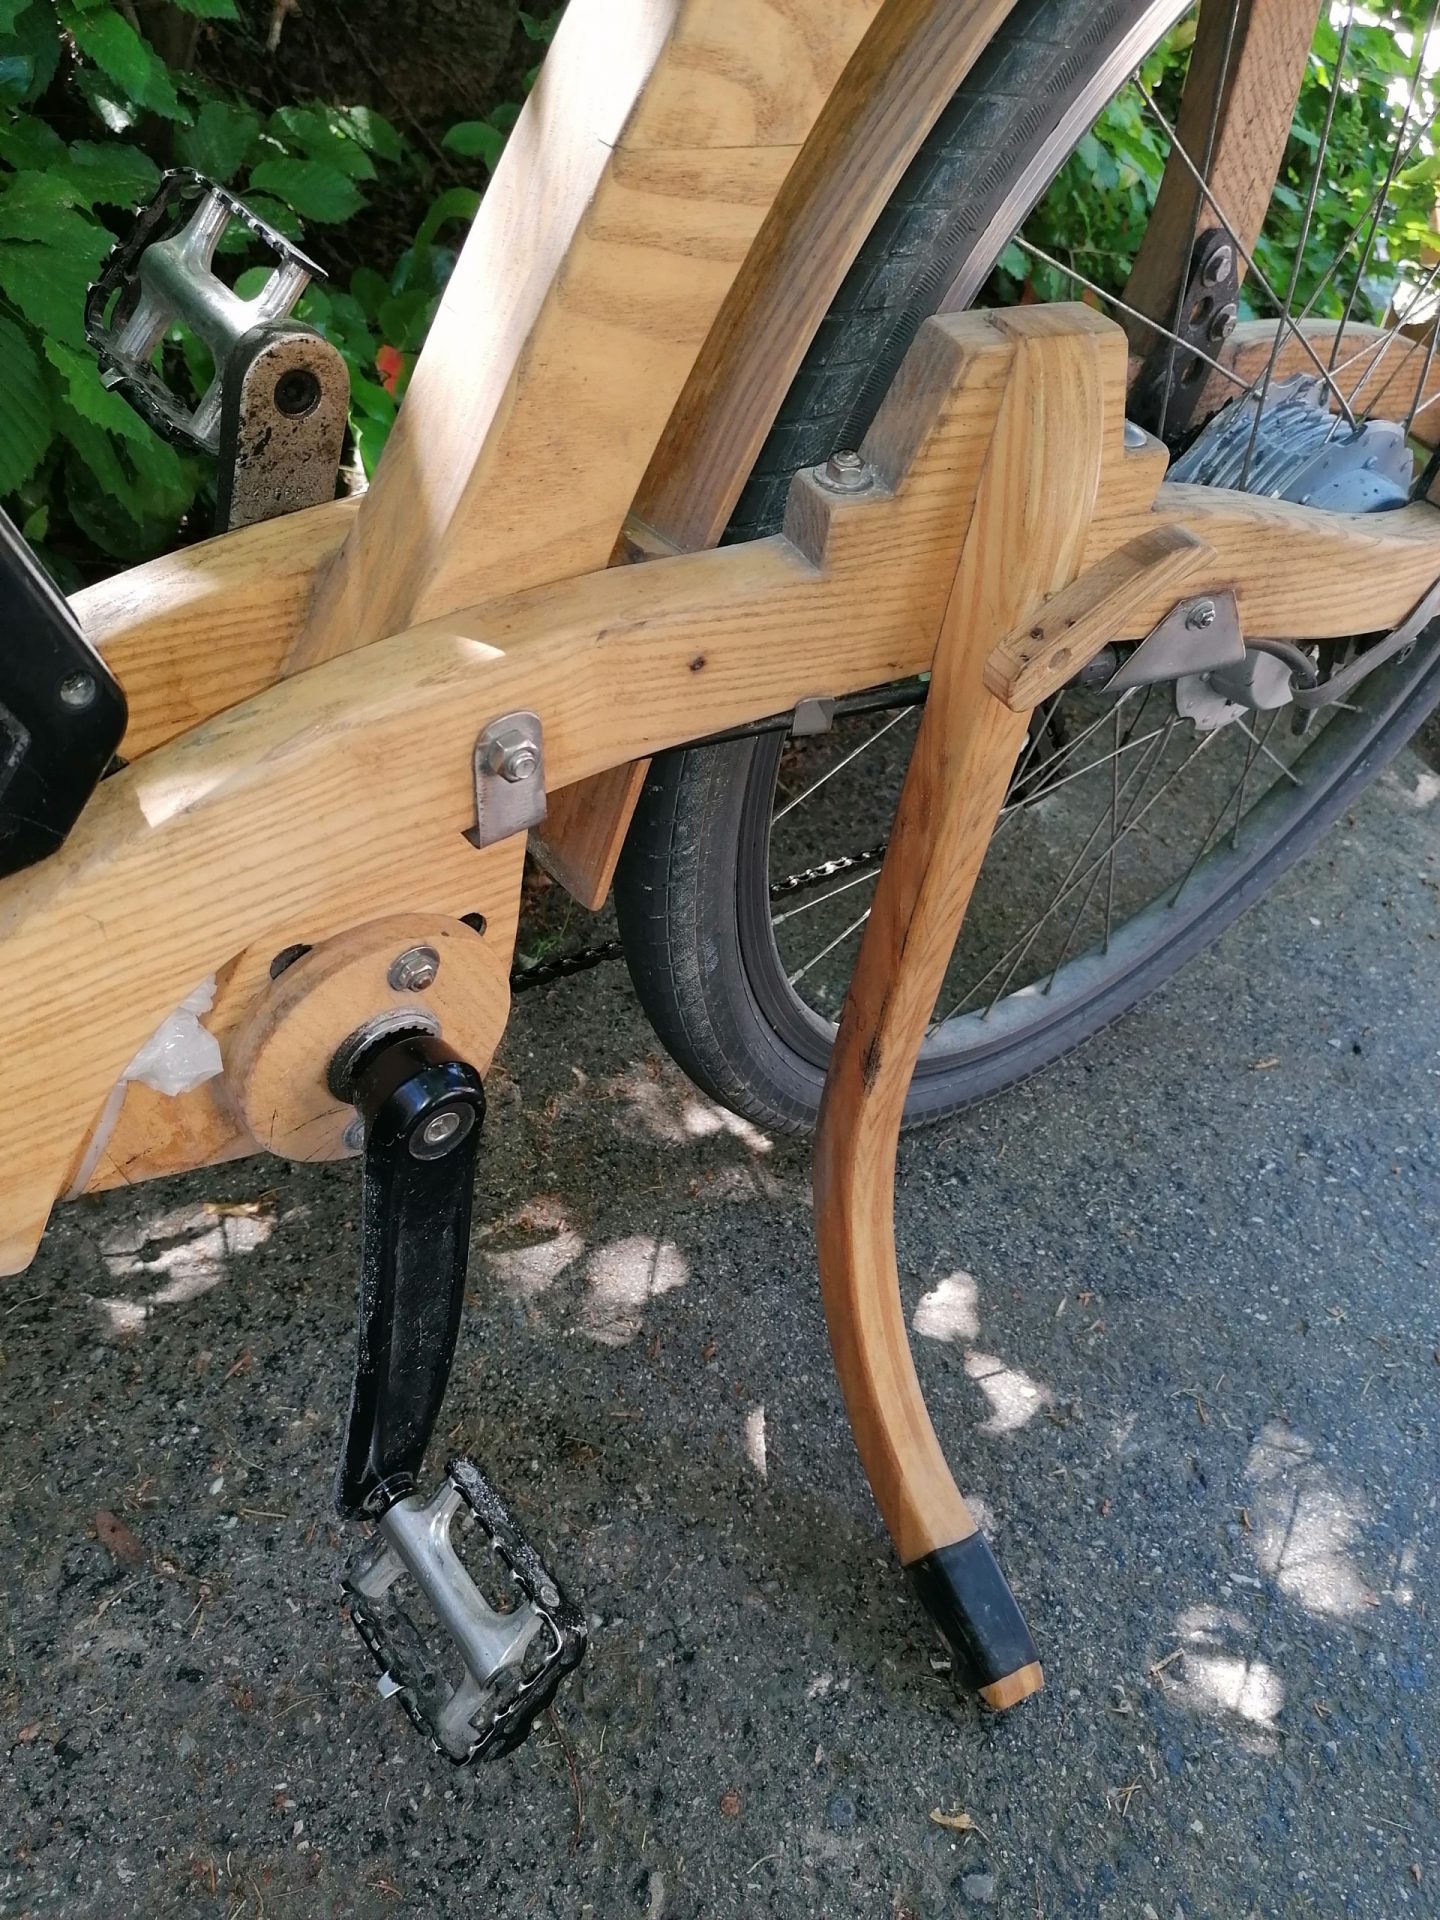 Veloliebe mit E-Bike aus Holz von Christian Gerber